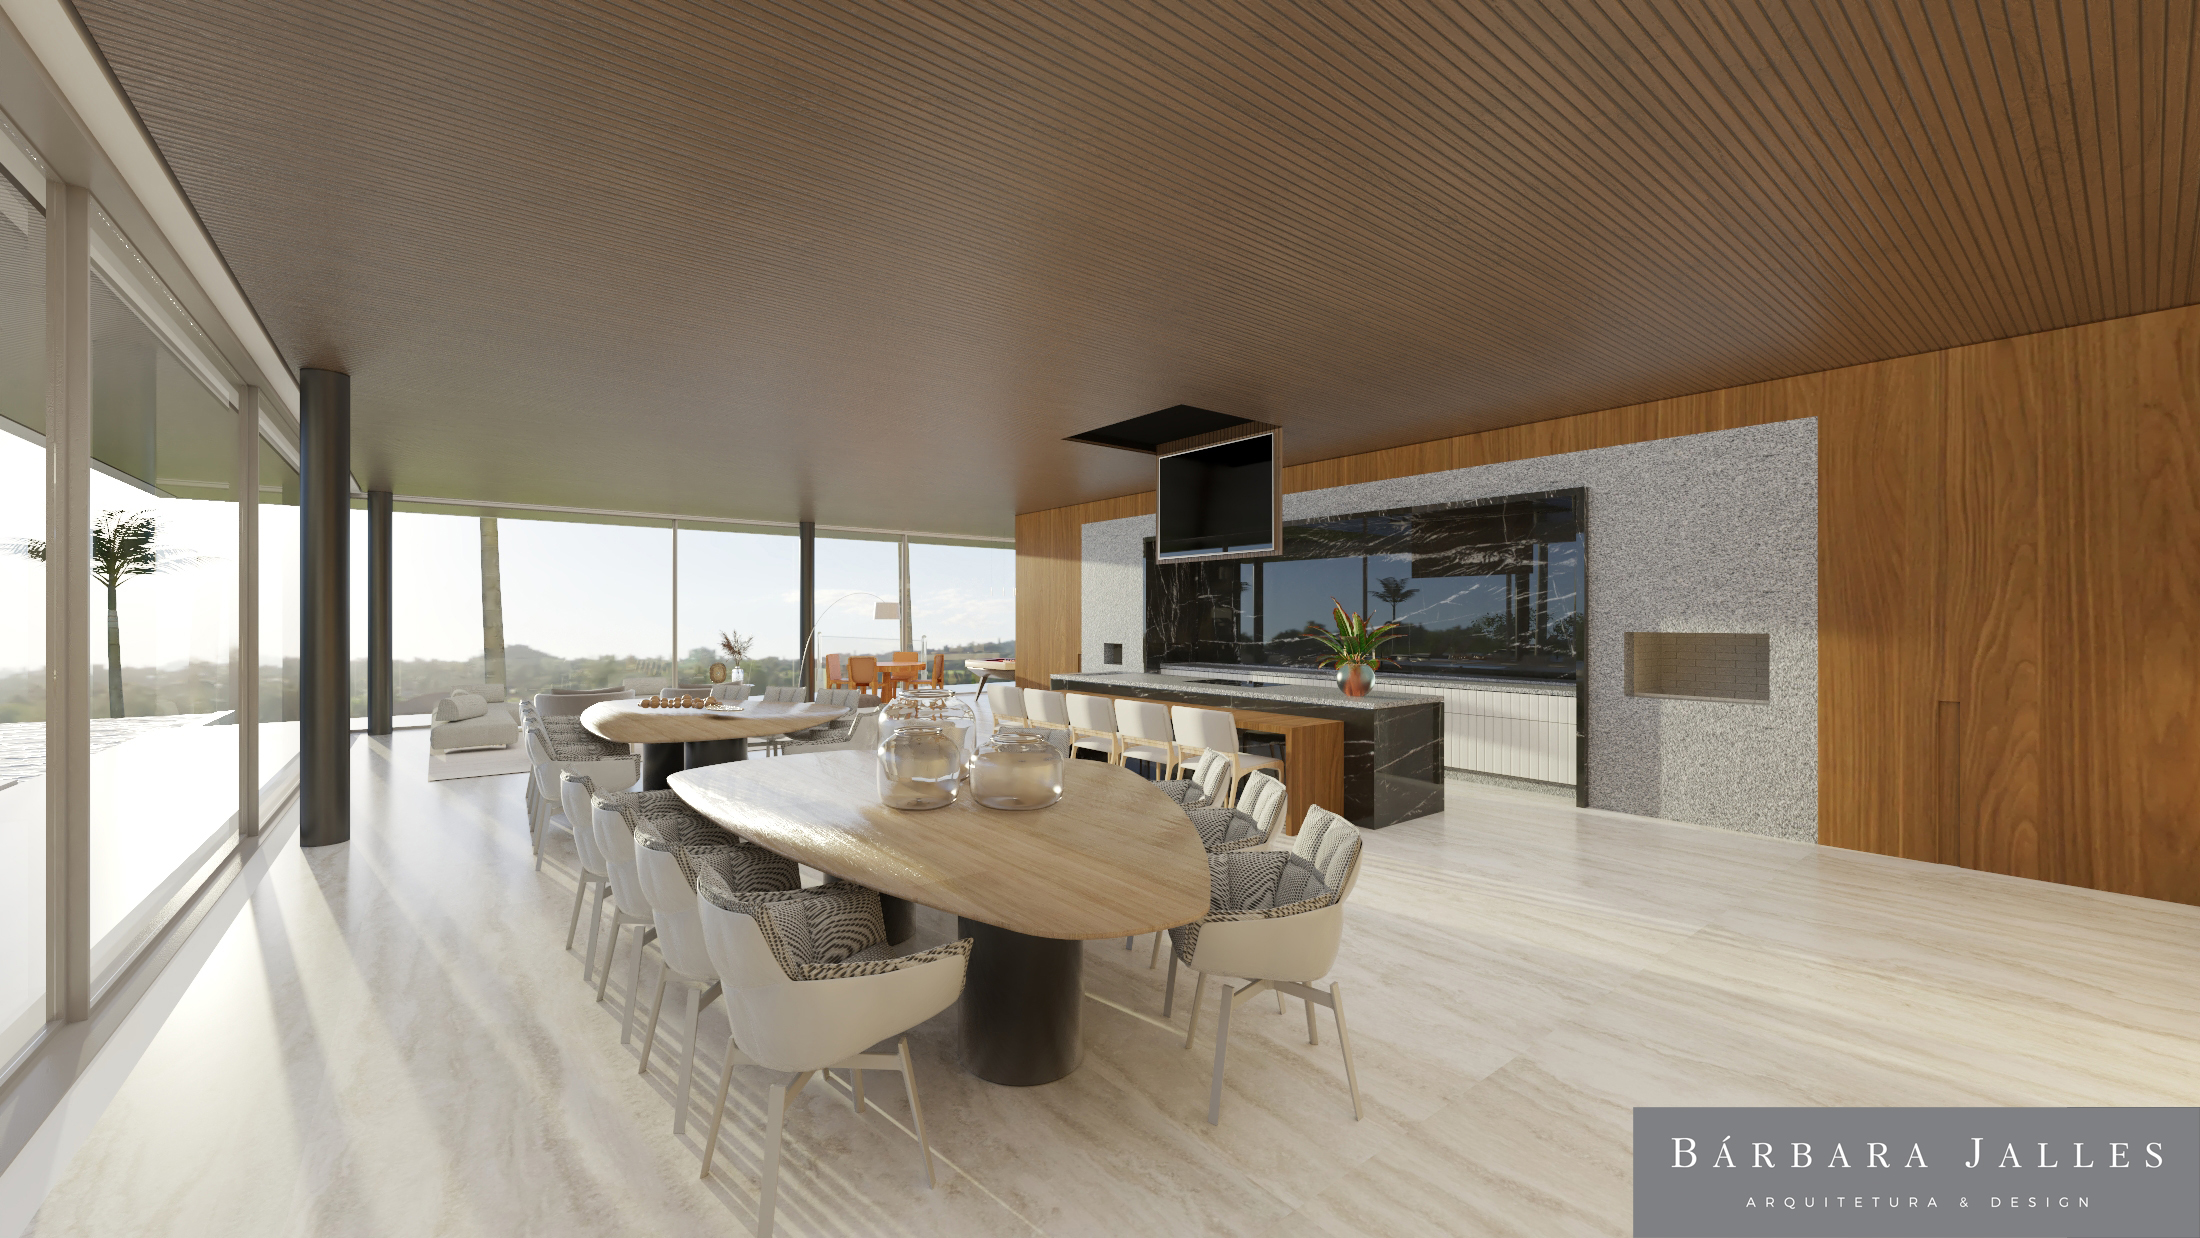 Imagem 3D de projeto de casa de campo exibe sala aberta de pé-direito alto com alguns móveis de cor clara e mesa oval no centro.